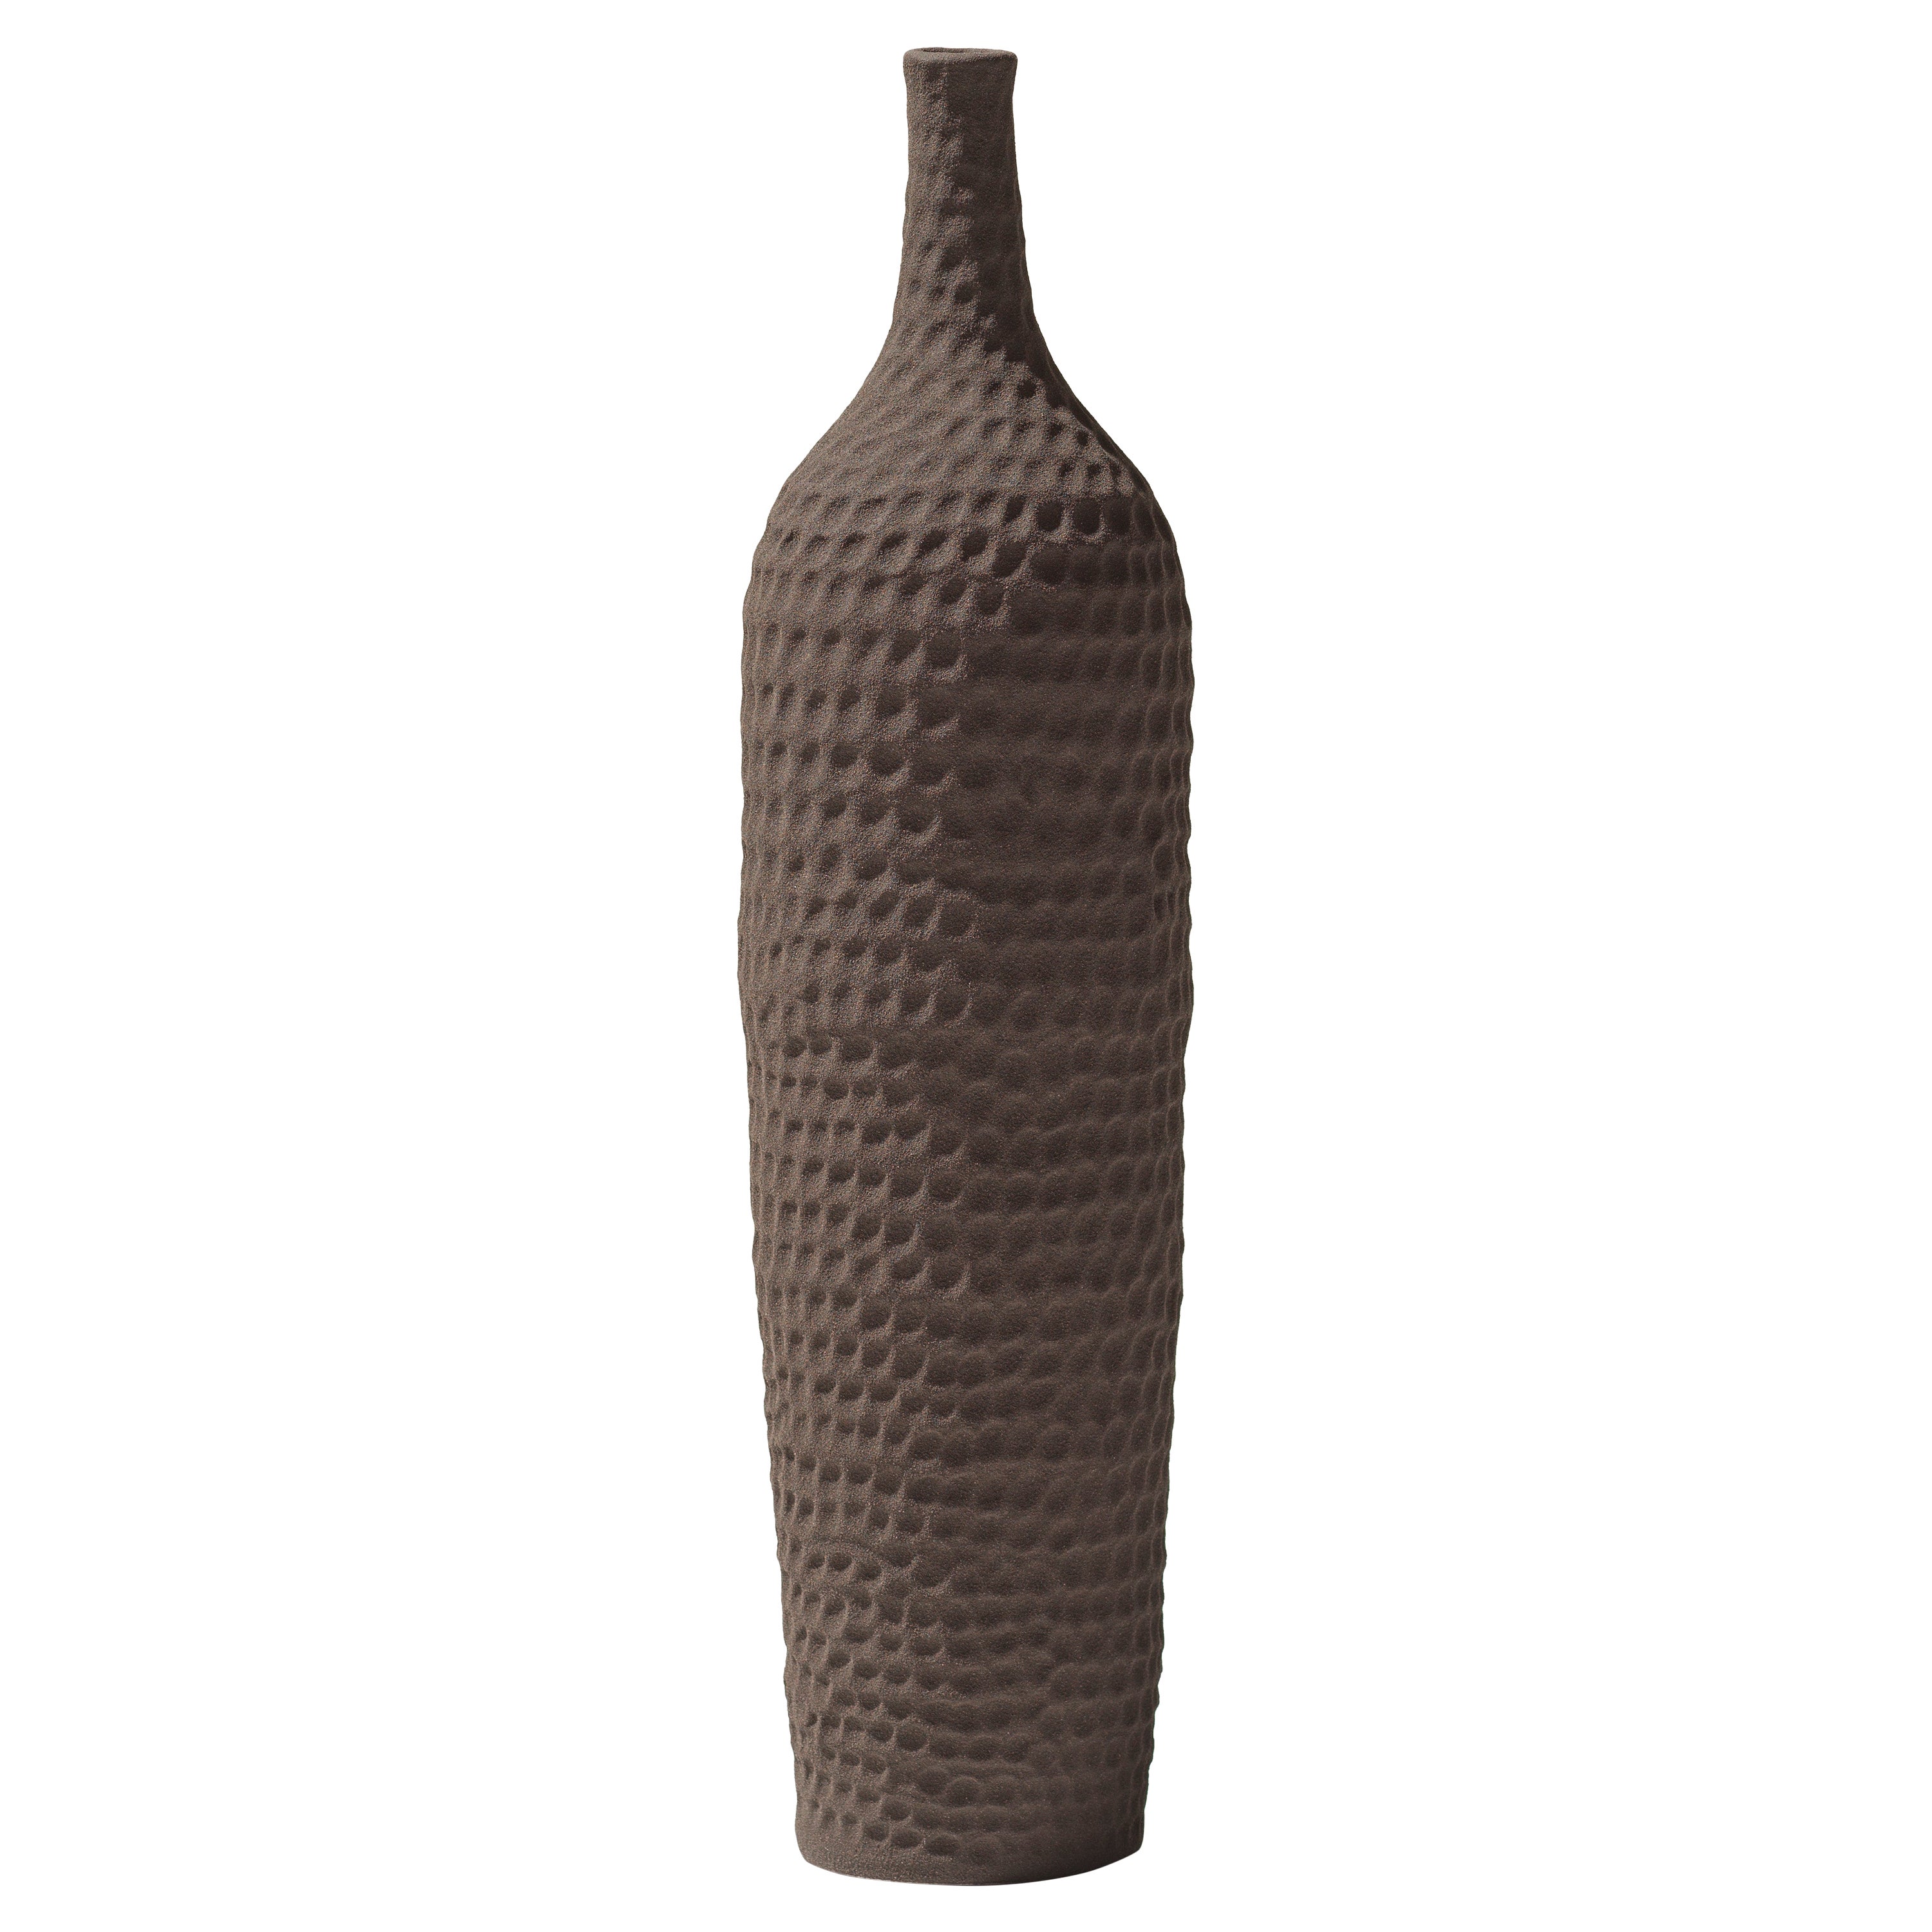 21st Century Brown Thin Neck Vase by Ceramica Gatti, designer A. Anastasio For Sale